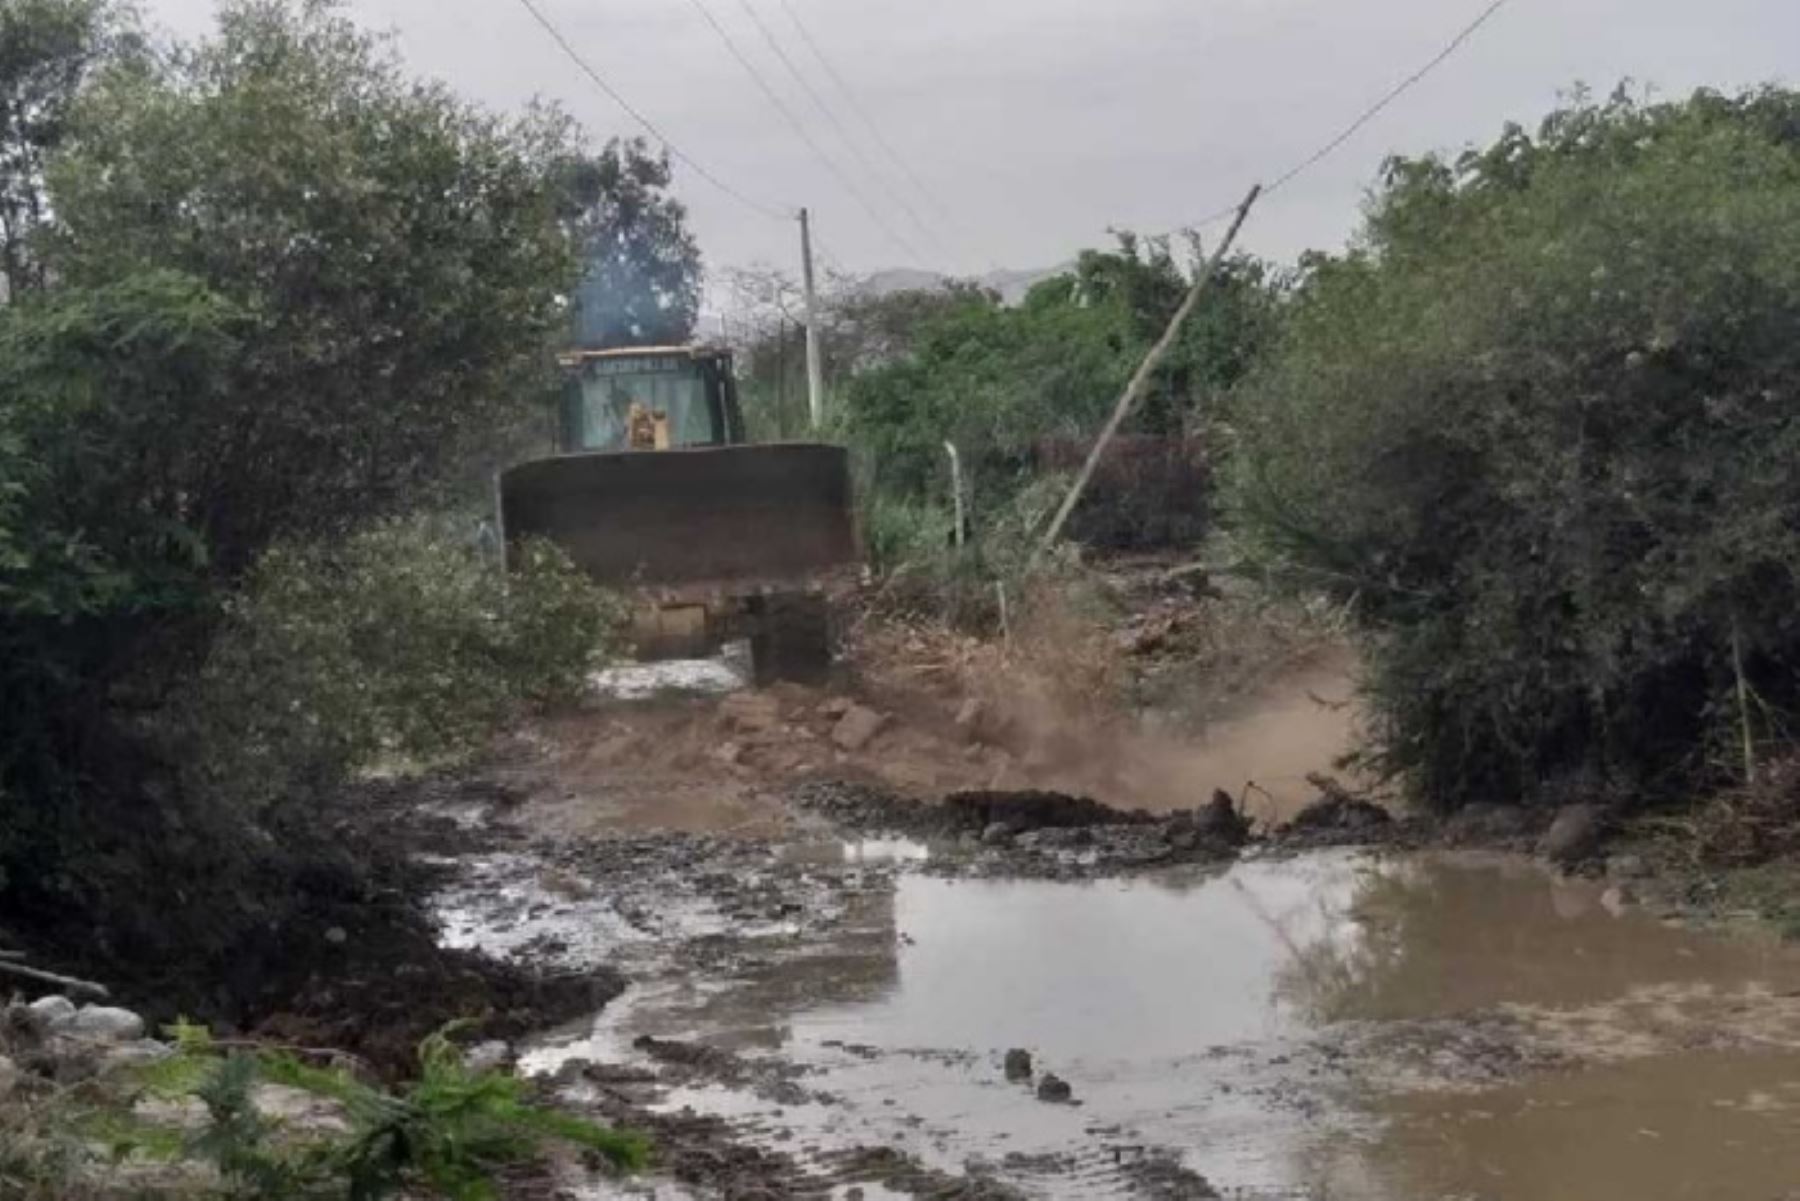 Pobladores de seis caseríos del distrito de Moro, en la provincia ancashina del Santa, han quedado aislados debido al aumento del caudal y desborde del río Moro, ocurrido esta mañana a causa de lluvias intensas.